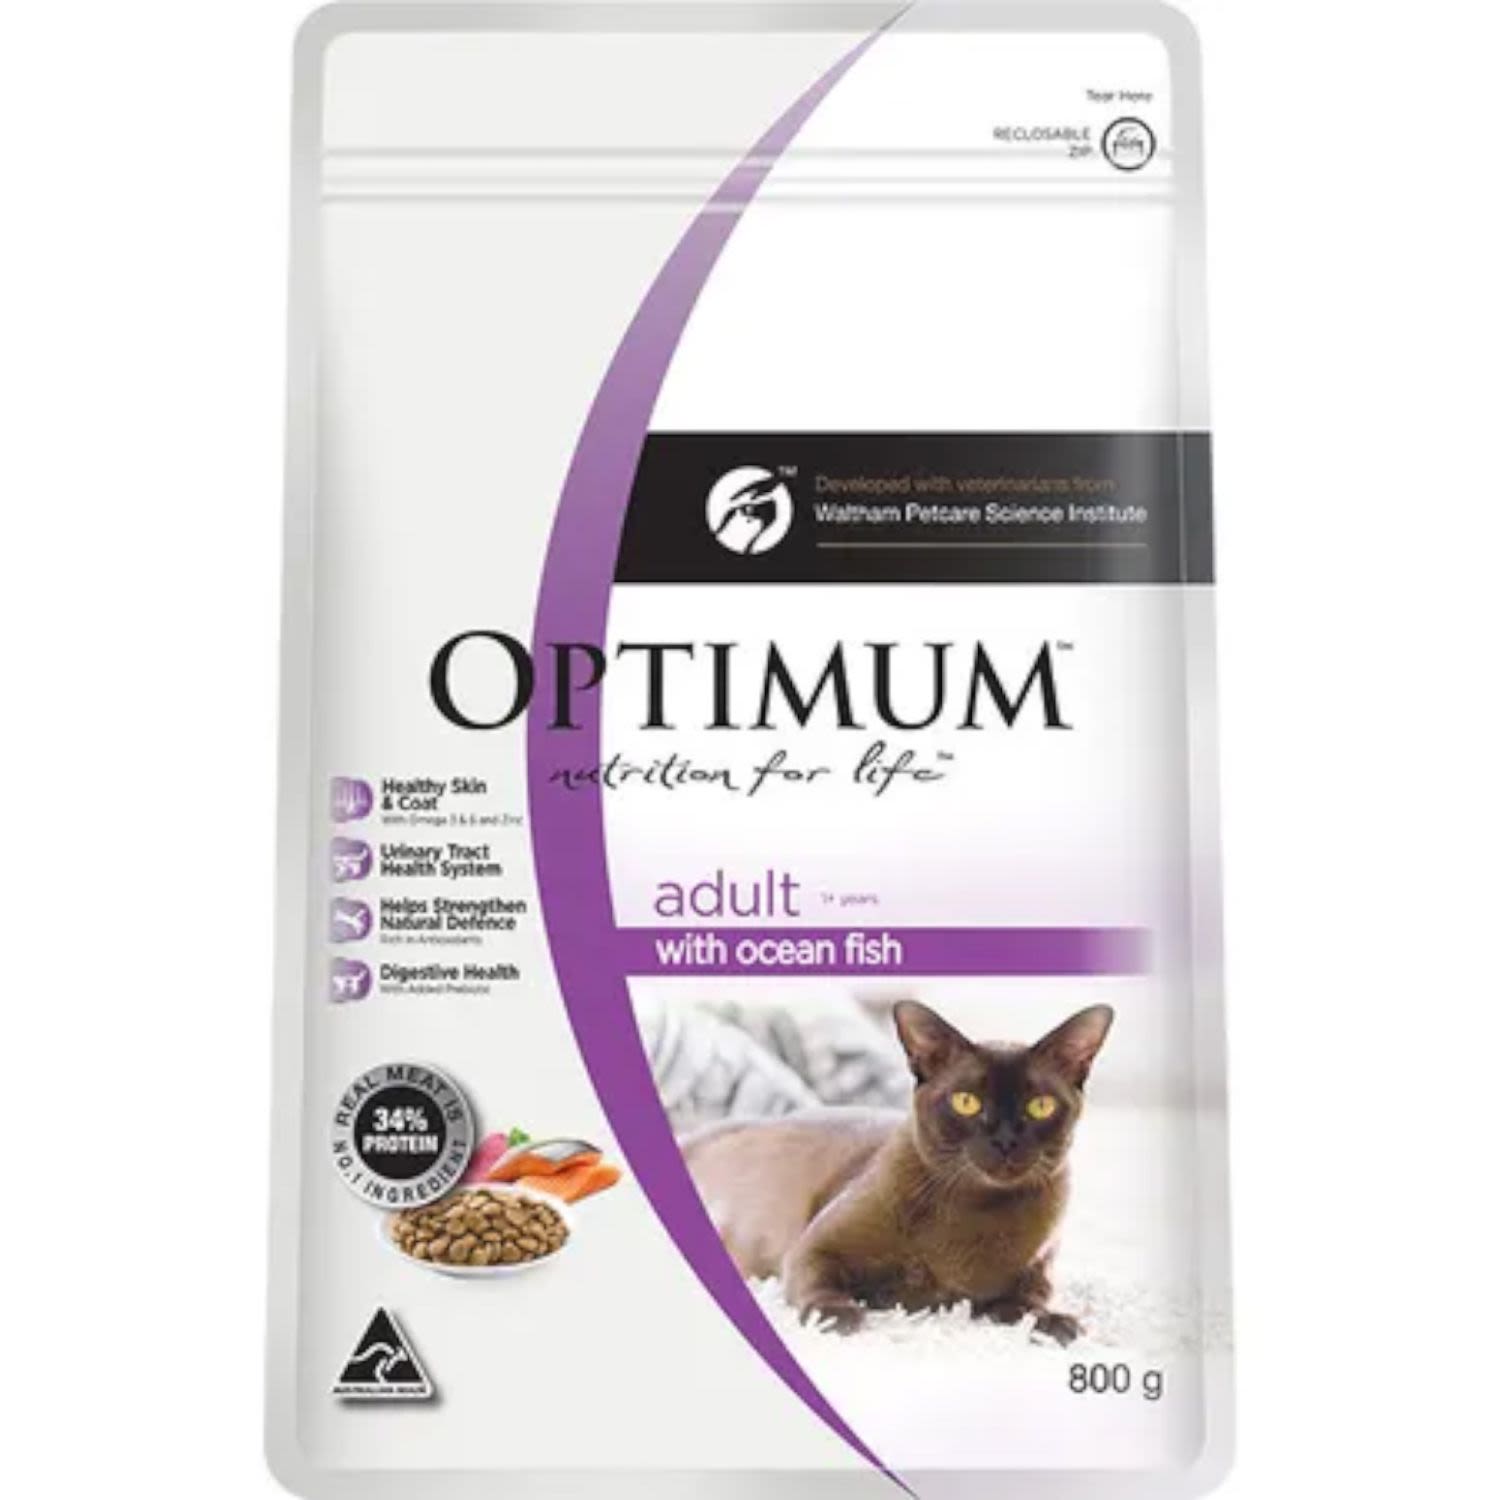 Optimum Dry Cat Food Ocean Fish Bag, 800 Gram